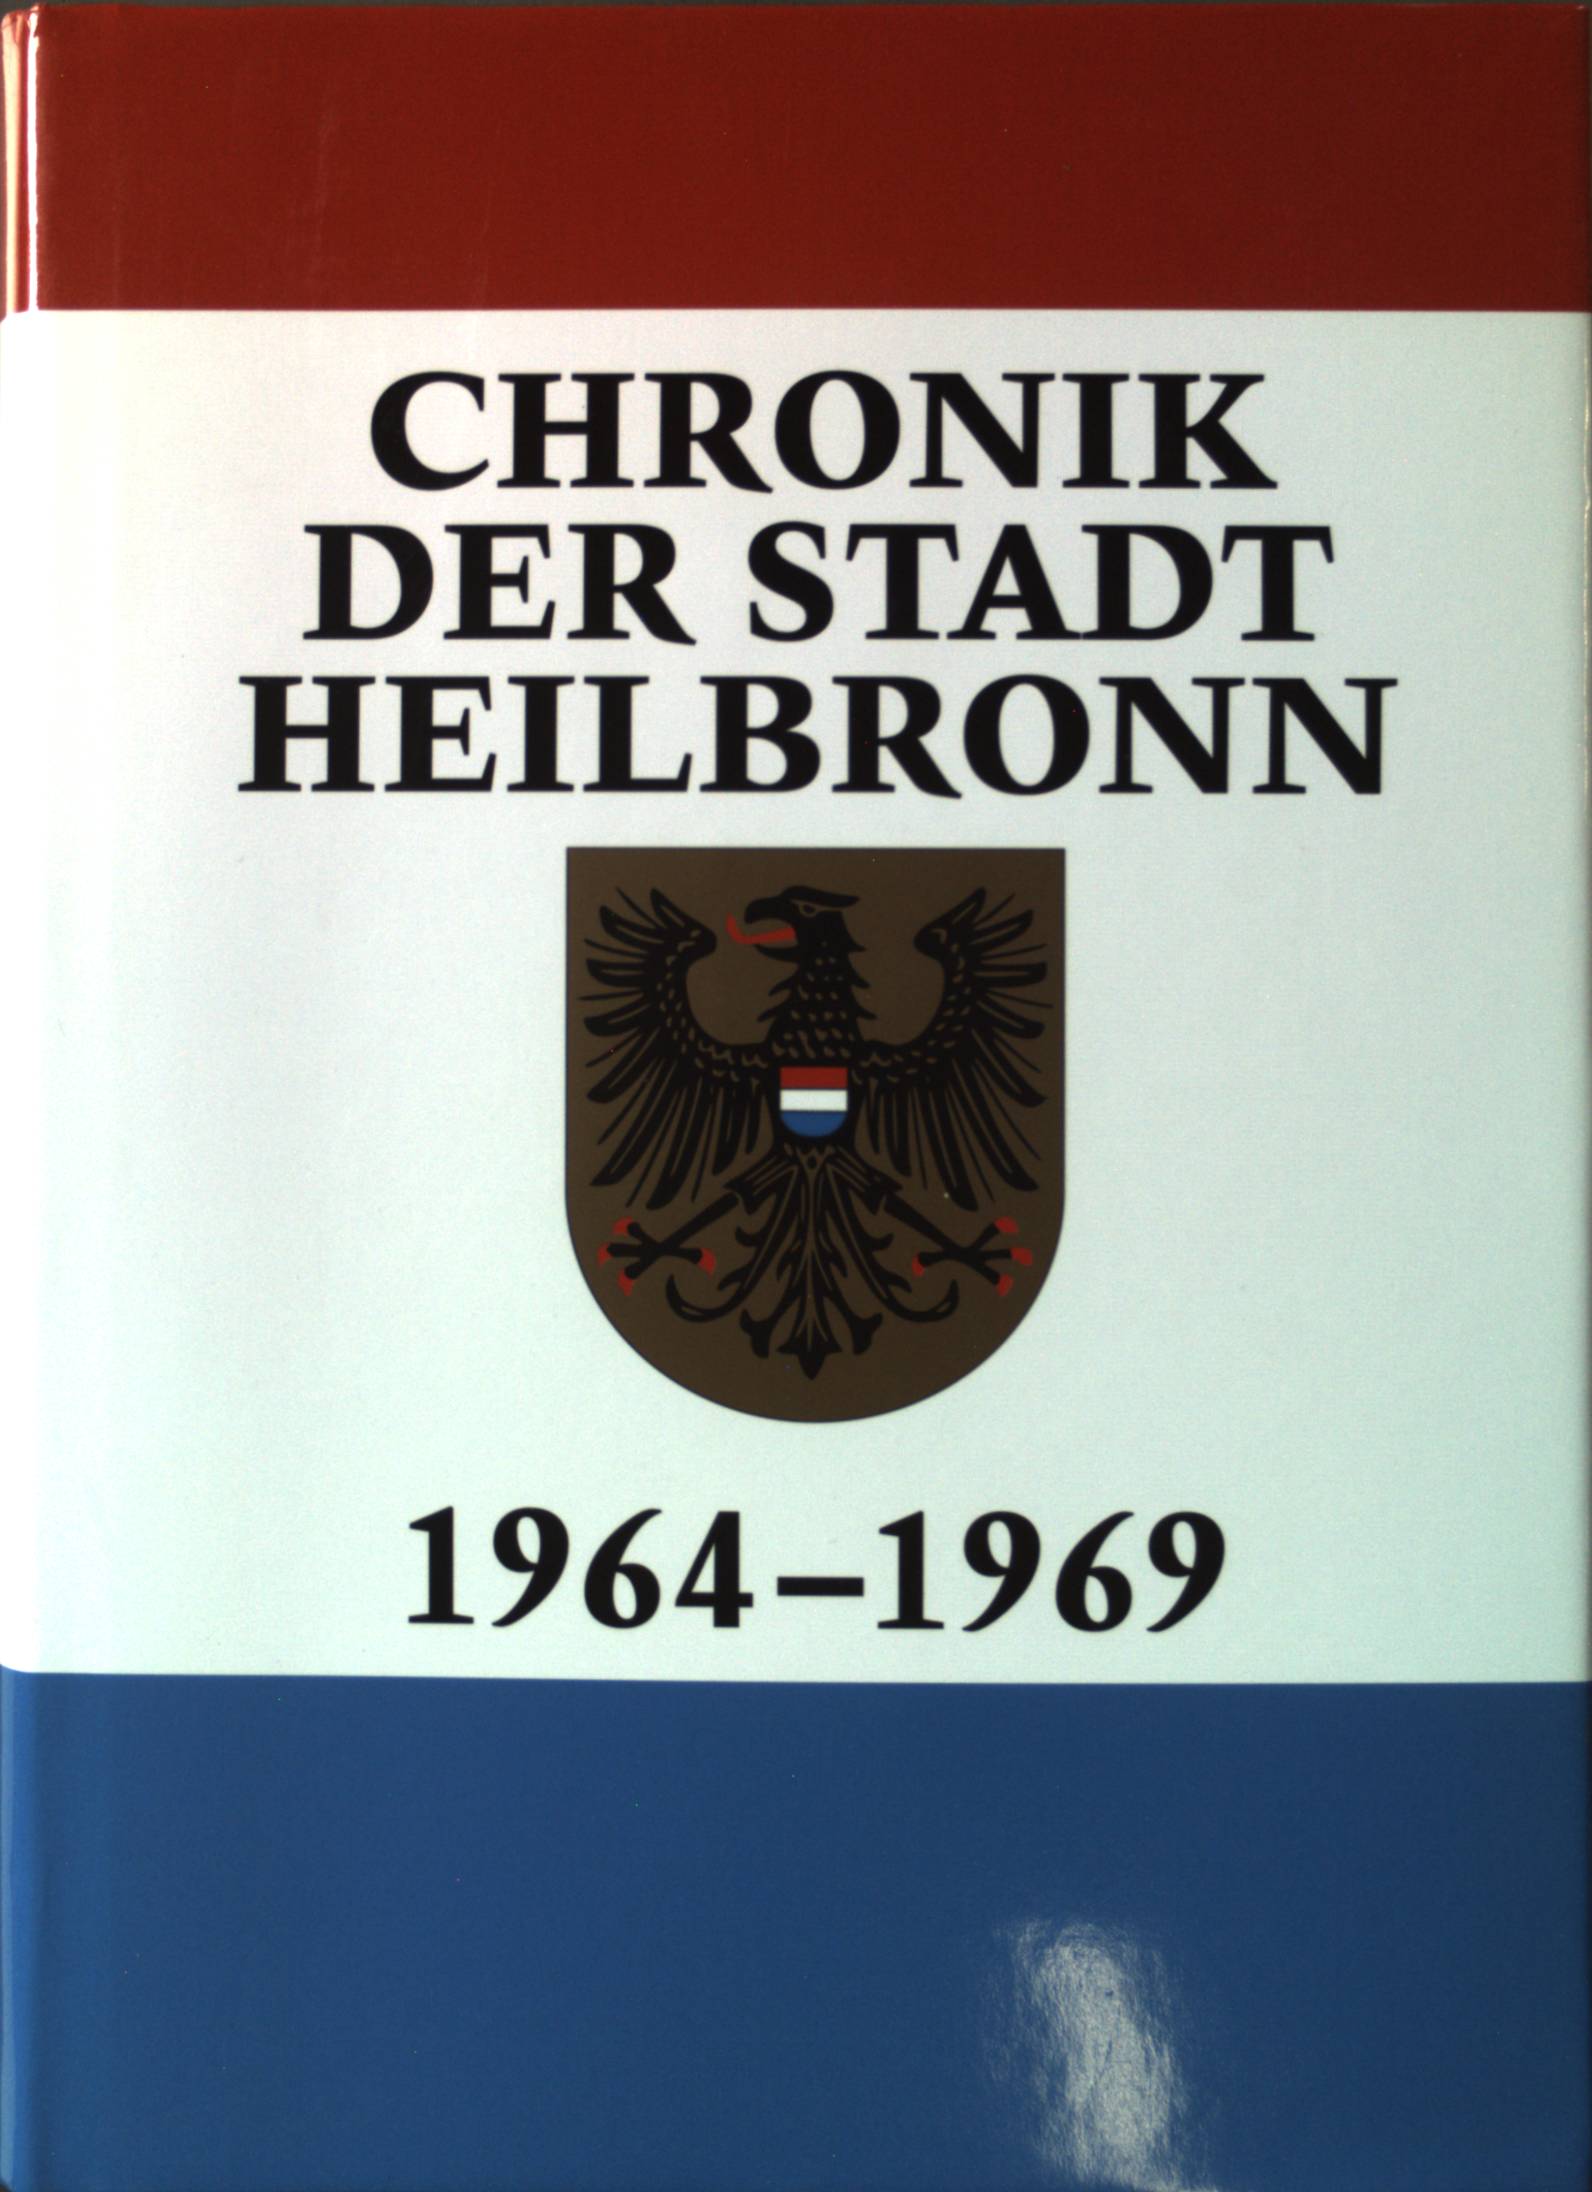 Chronik der Stadt Heilbronn: Band 9., 1964-1969. Veröffentlichungen des Archivs der Stadt Heilbronn ; Band 50 - Foell, Werner und Christhard Schrenk